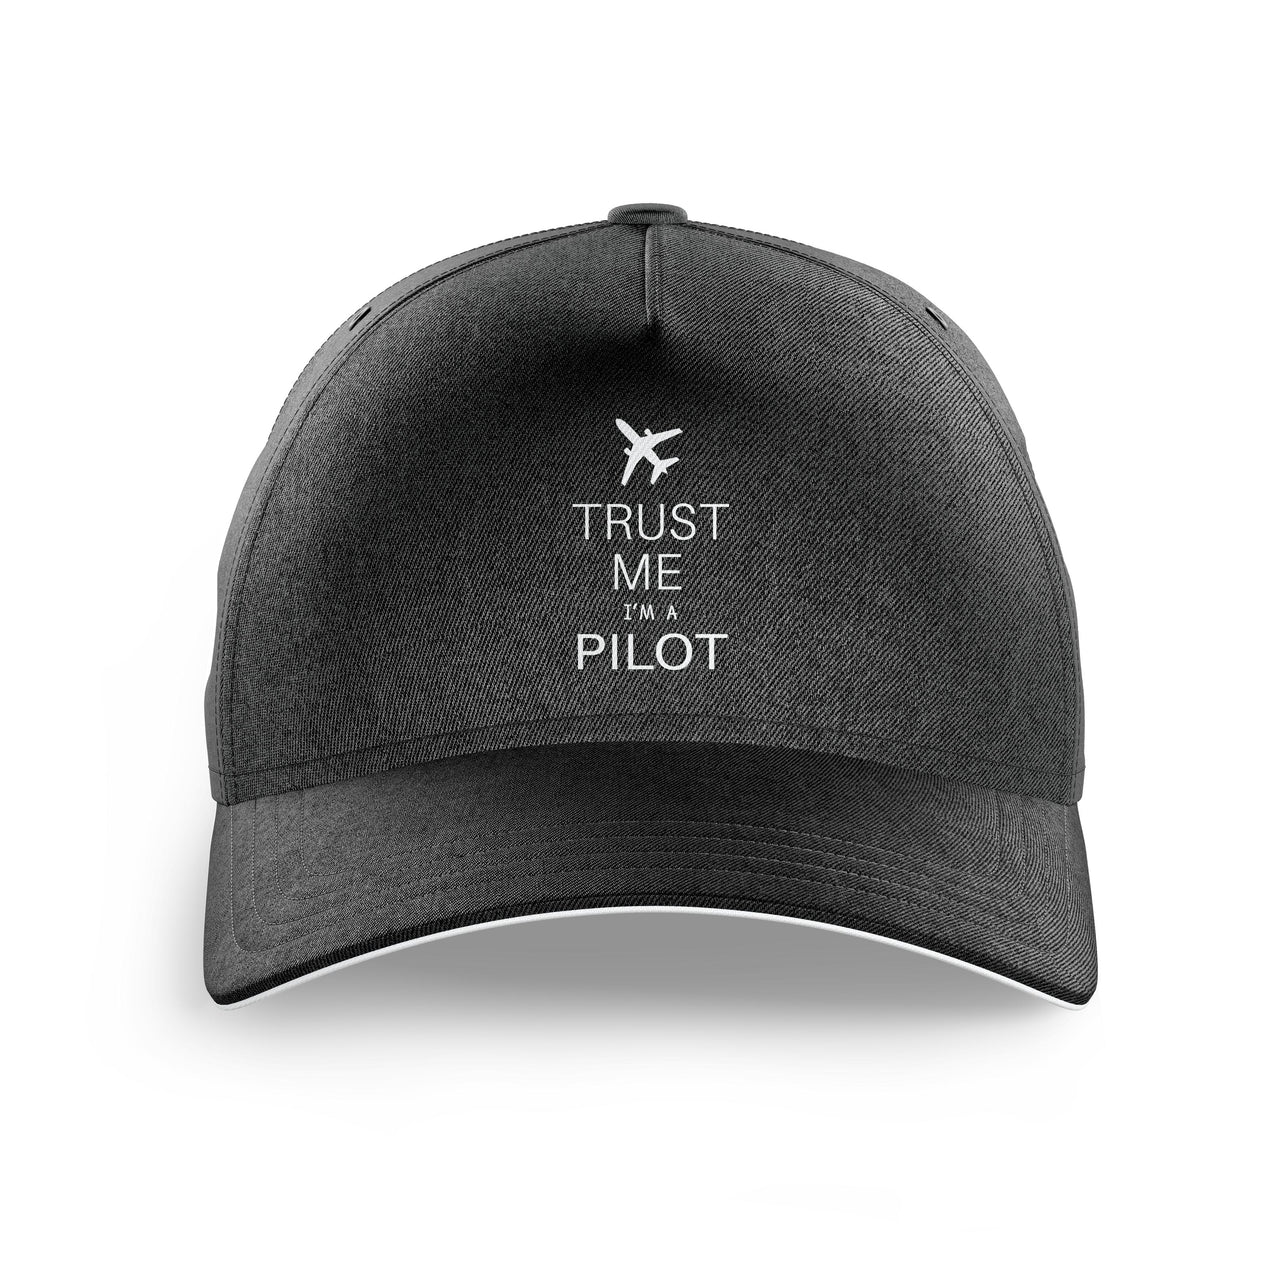 Trust Me I'm a Pilot 2 Printed Hats